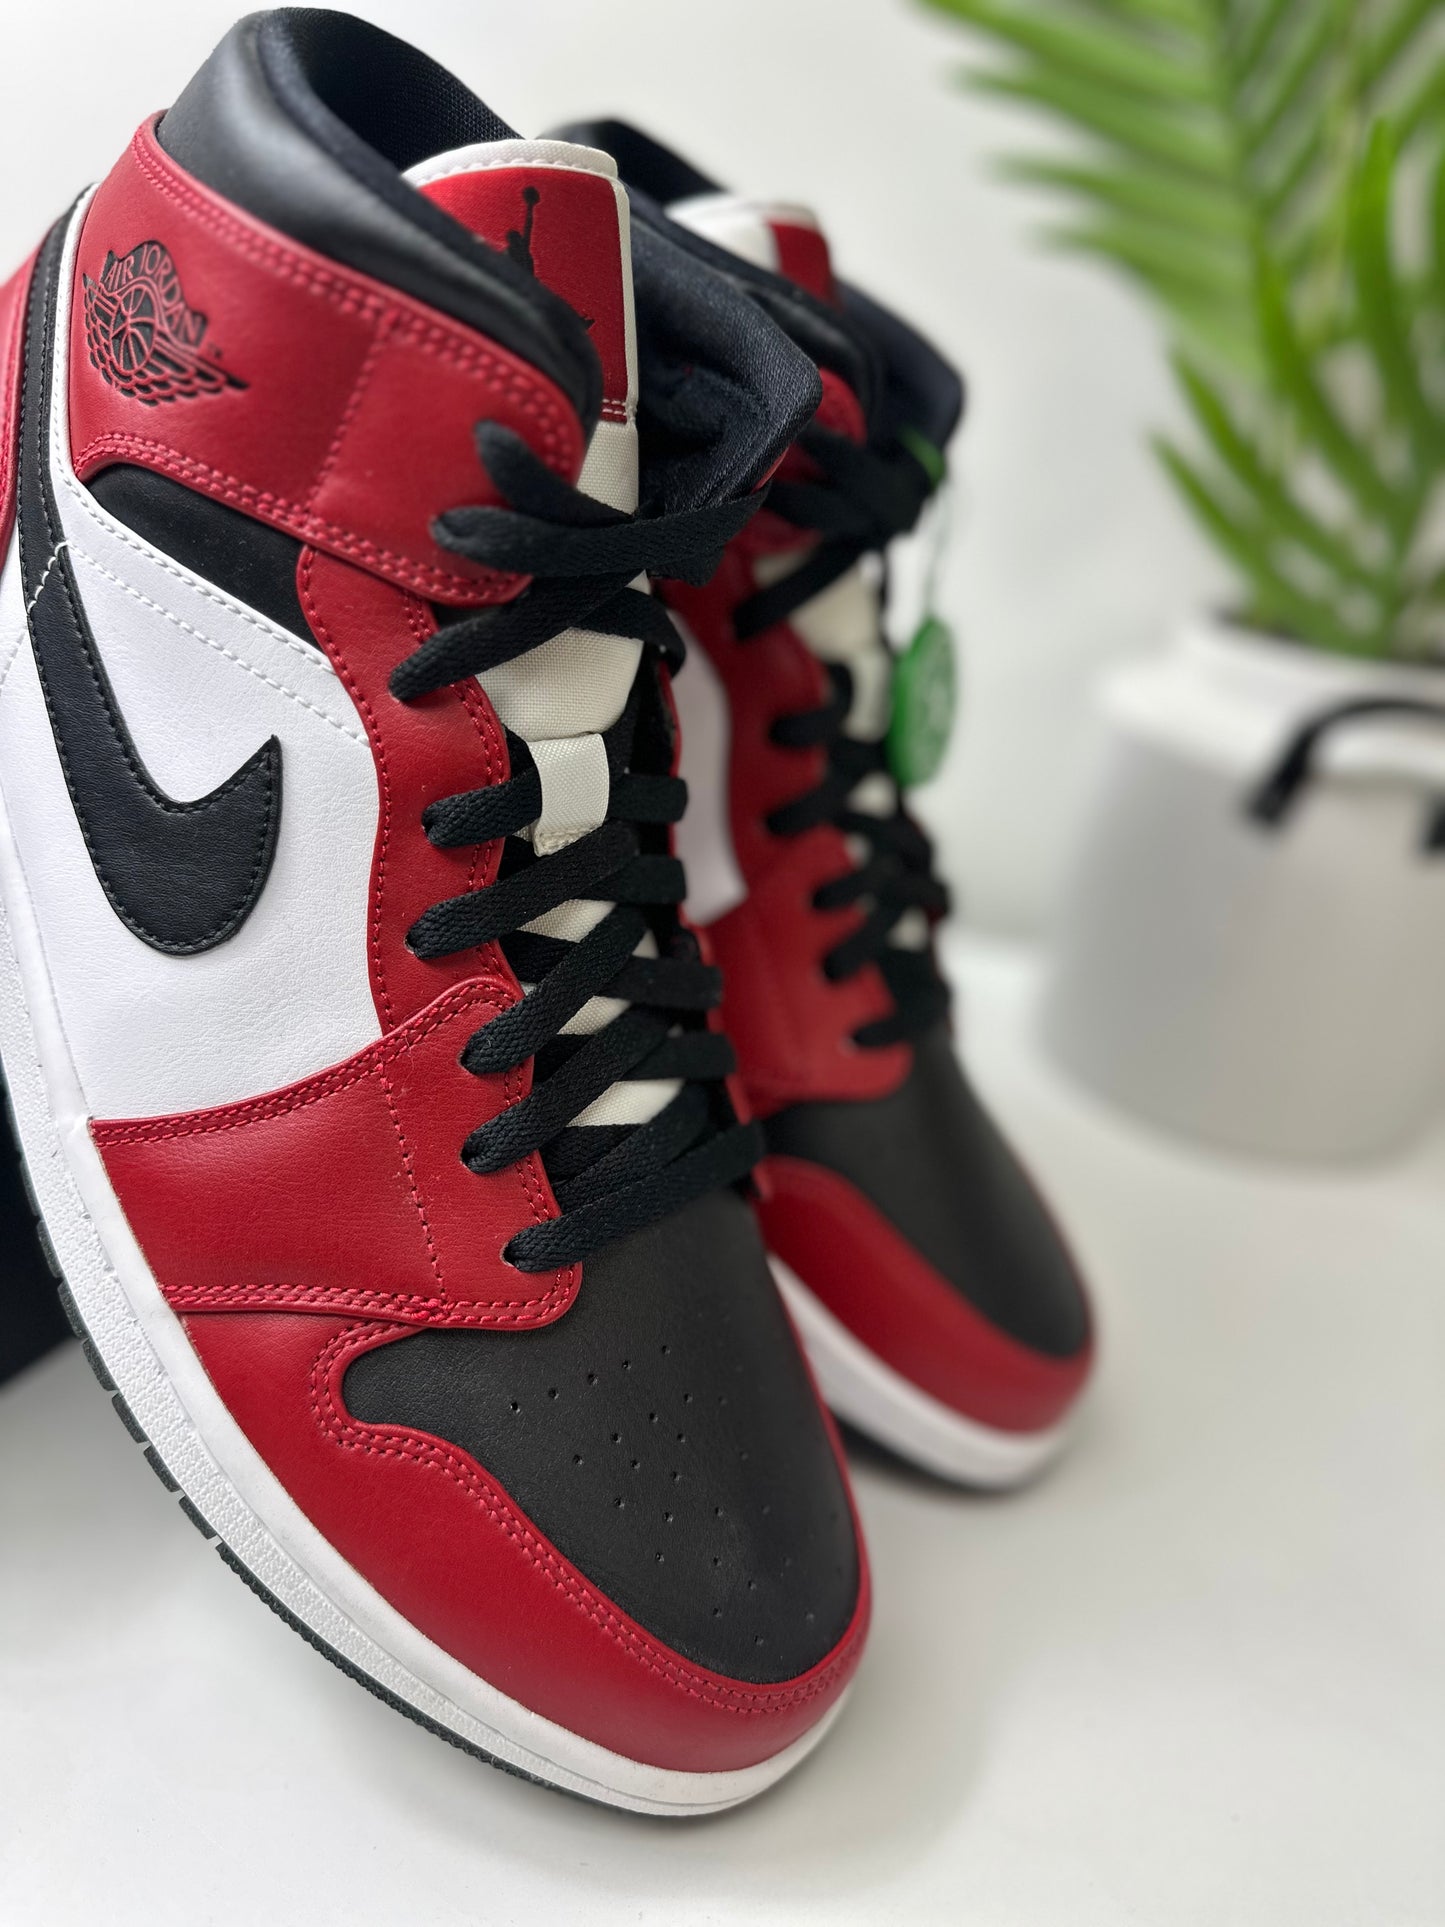 Air Jordan 1 Mid “Chicago Toe” Size 11.5 DS OG